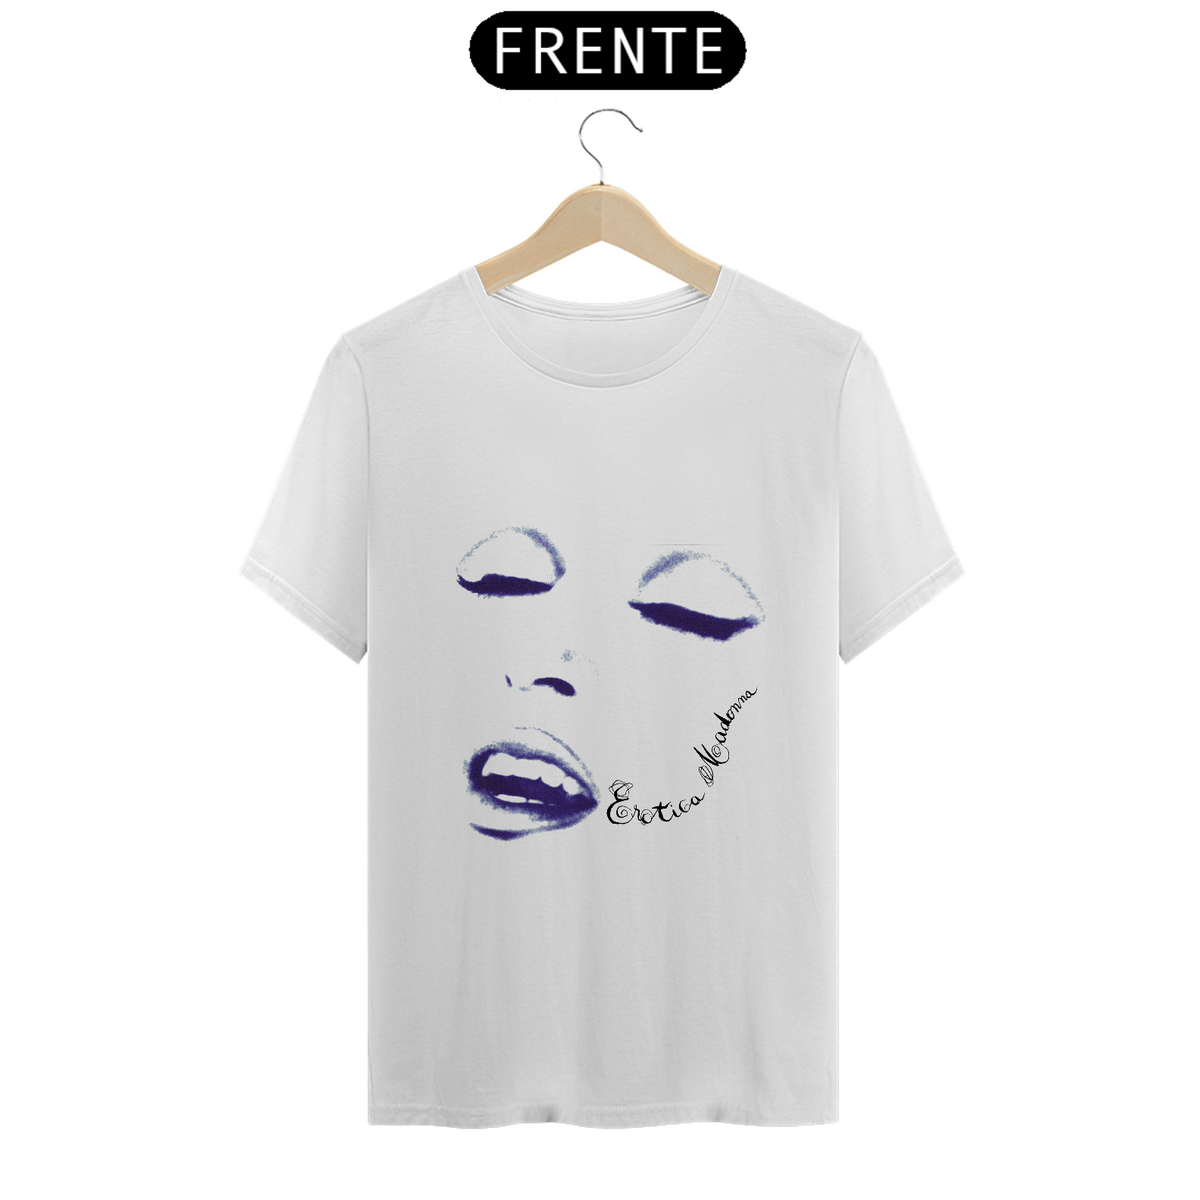 Nome do produto: Camiseta Madonna Erotica